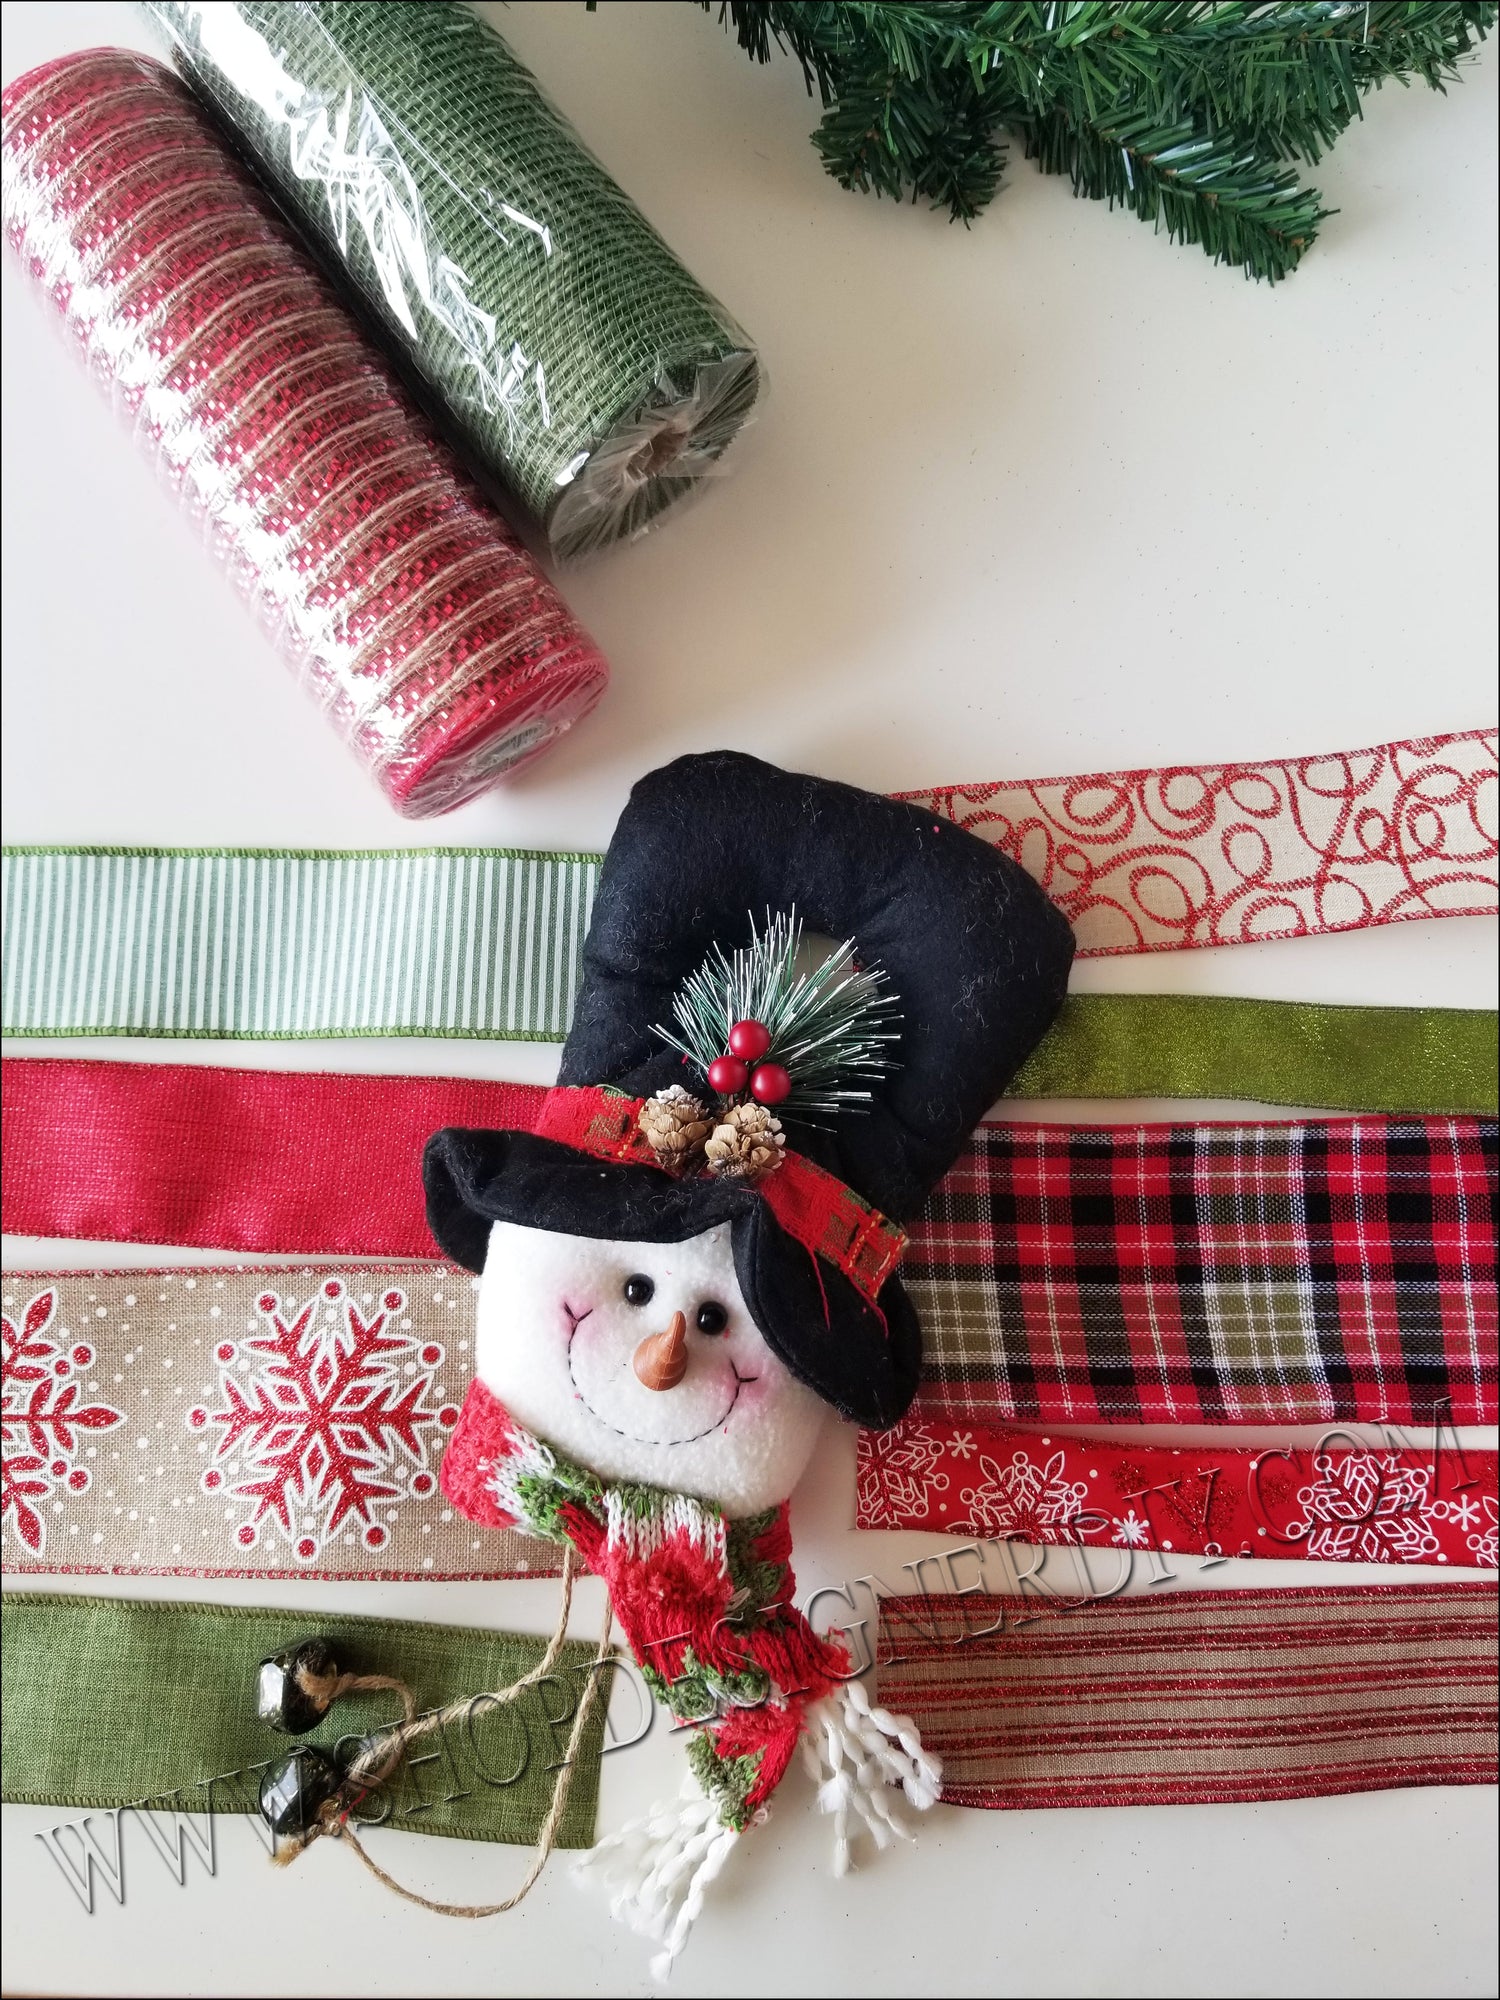 Christmas Wreath Kits - How to make a Christmas wreath